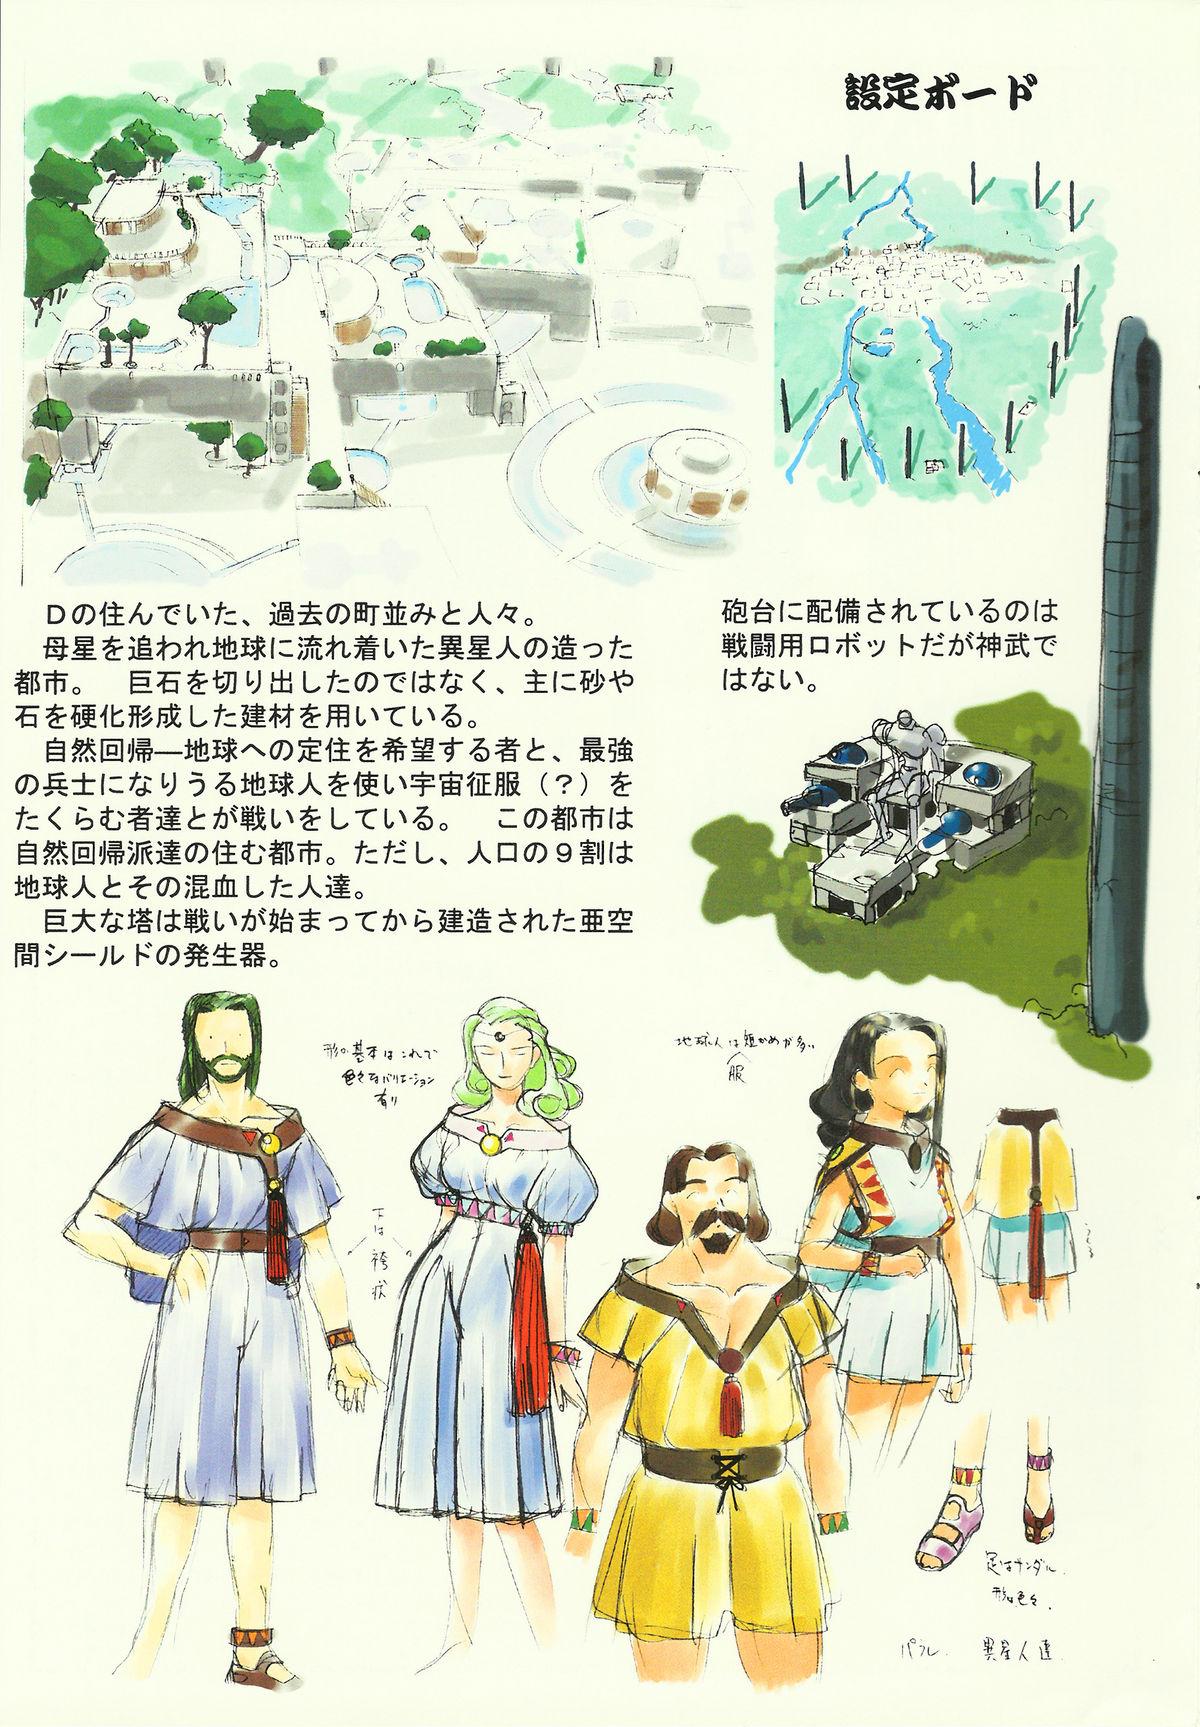 Assfucked Omatsuri Zenjitsu no Yoru Heisei Ban 3 - Dual parallel trouble adventure Spaceship agga ruter Nut - Page 9